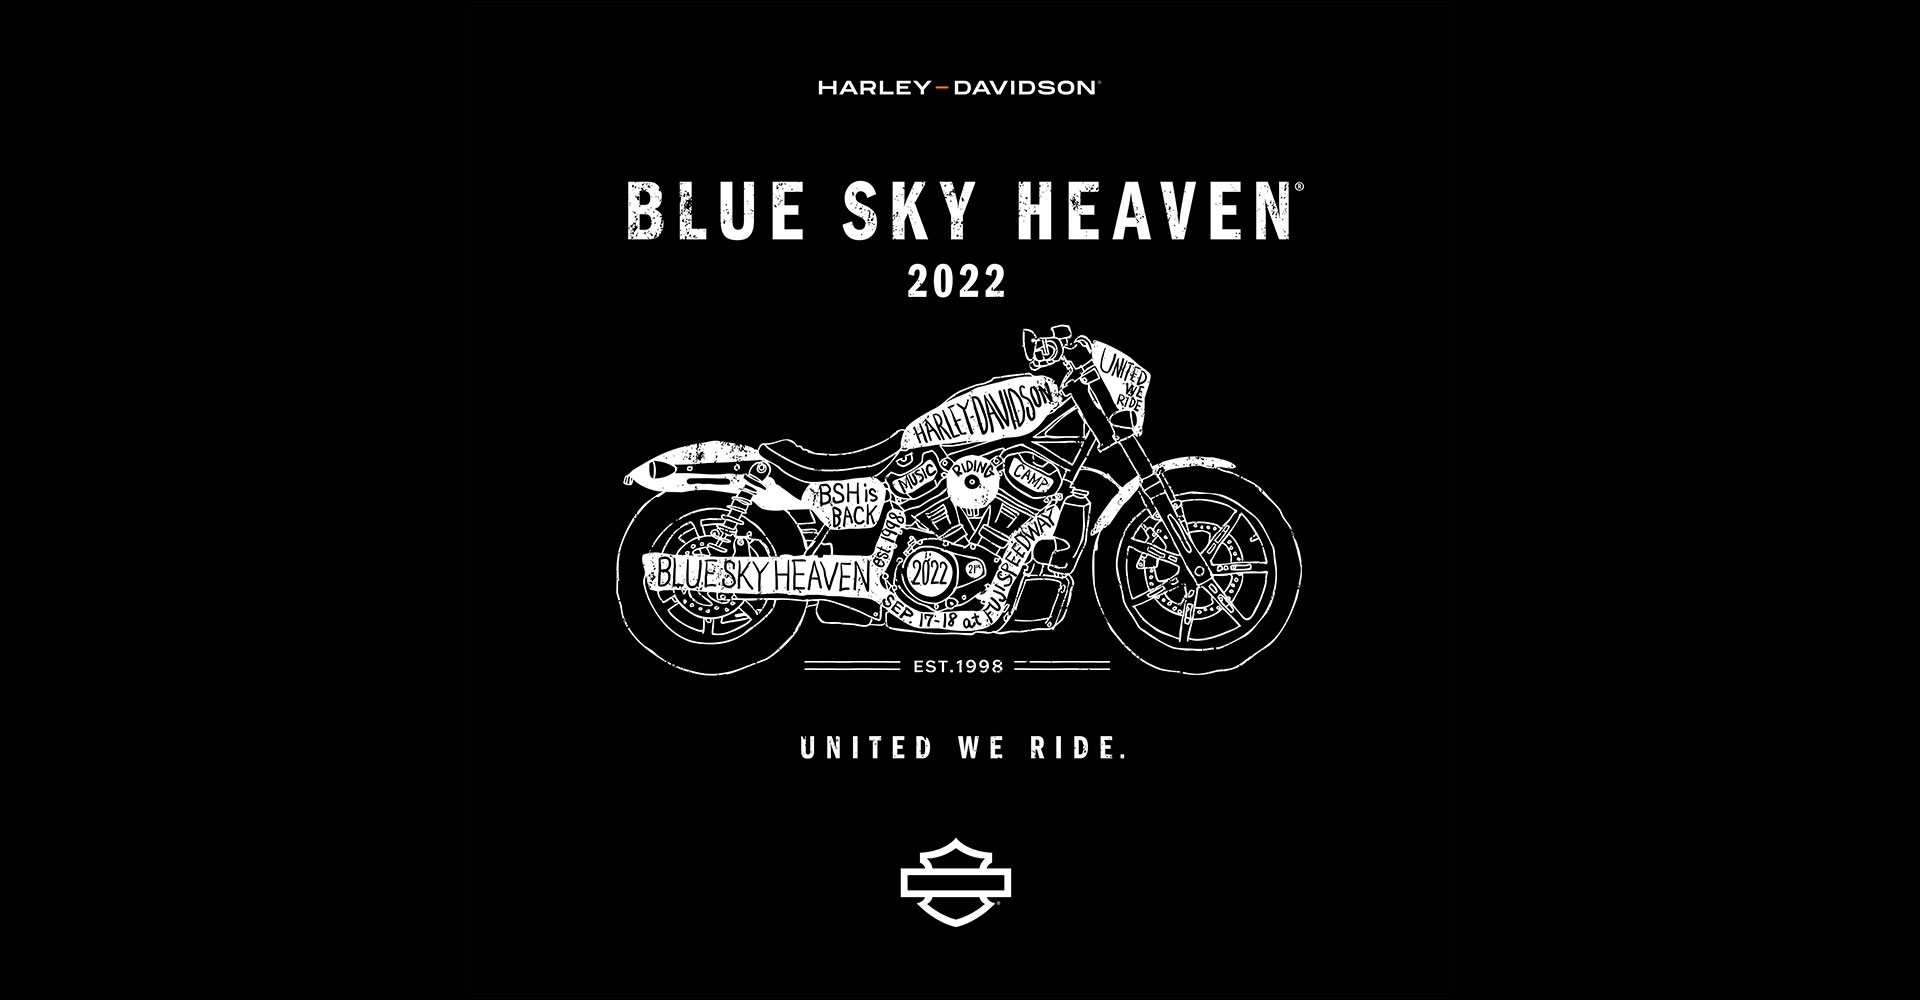 BLUE SKY HEAVEN 2022 